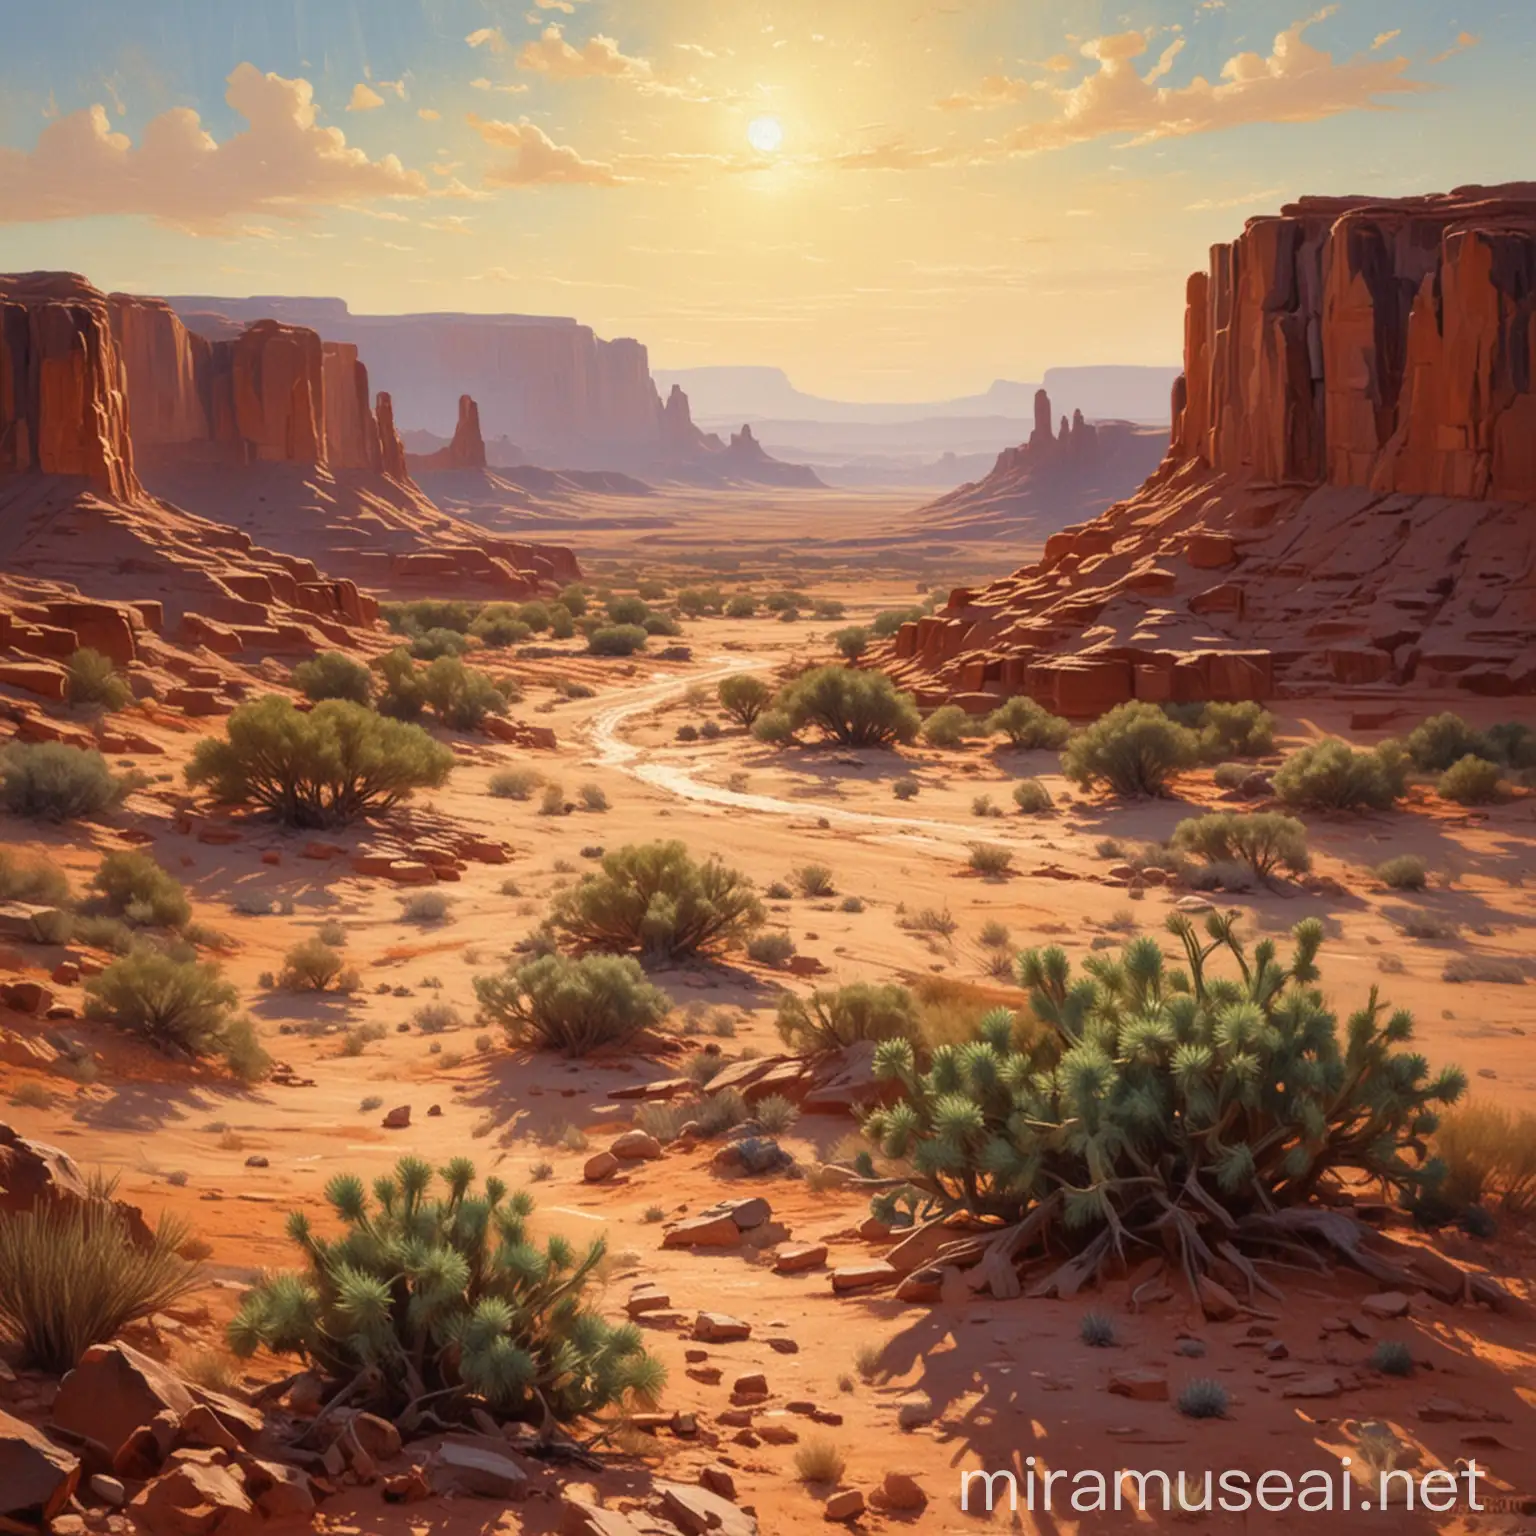 desert scene similar to Moab Utah, lots of depth, morning light, in the impressionist style of edgar payne